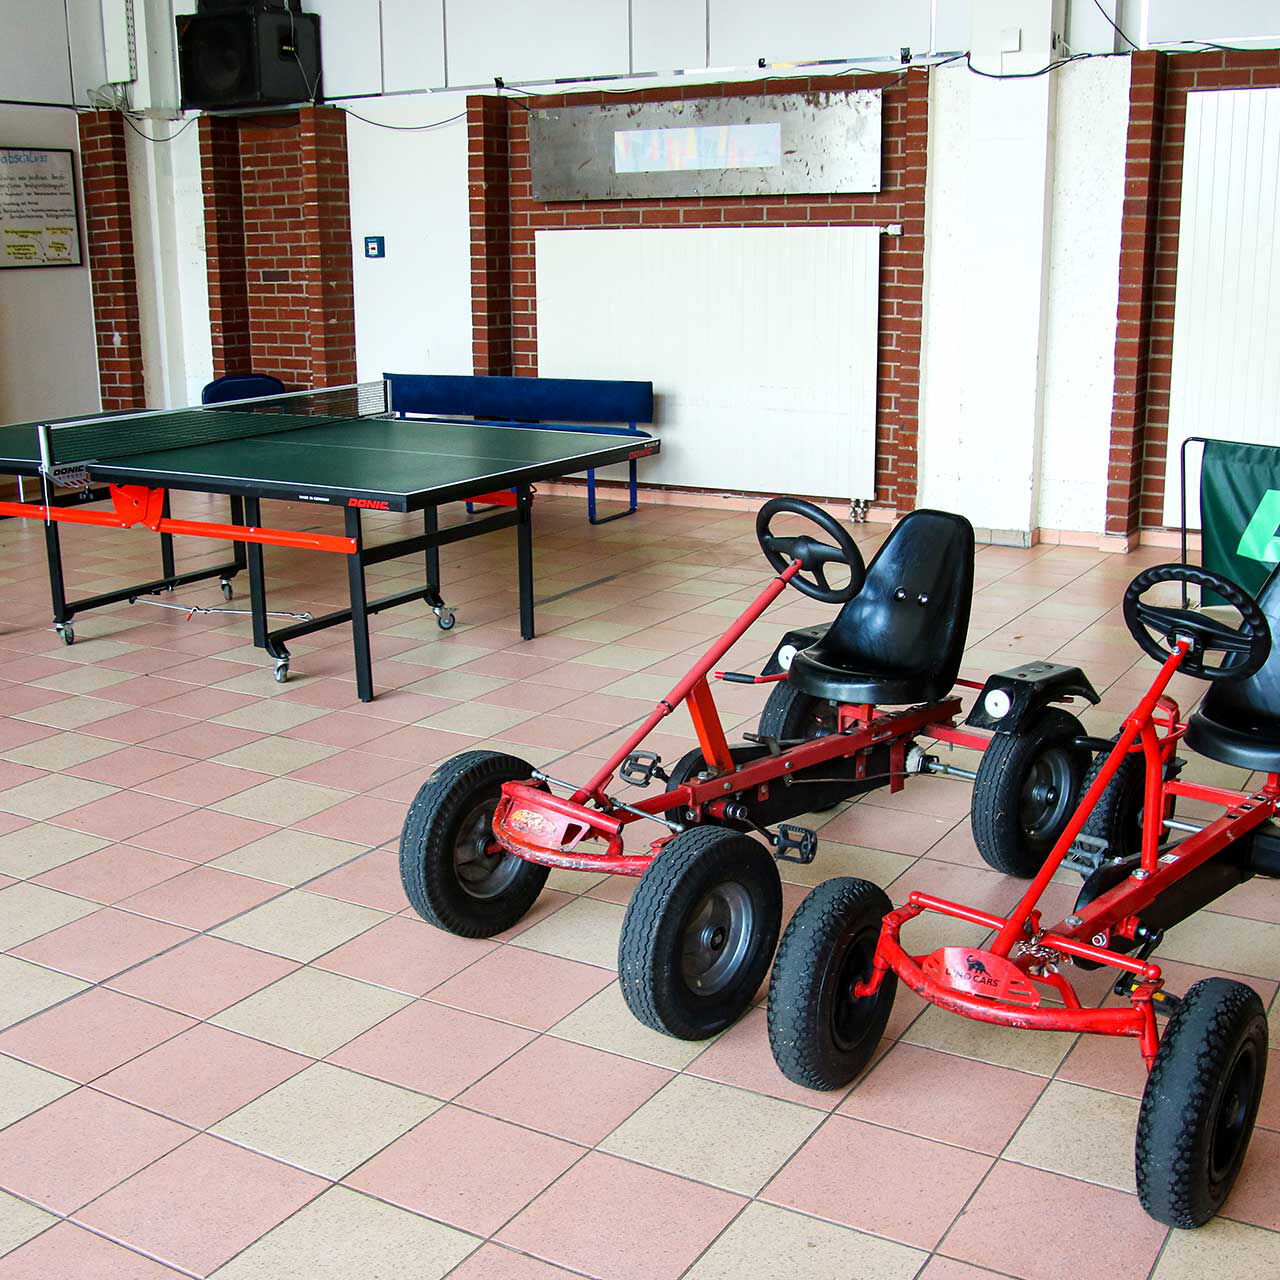 Die Kettcars stehen in der Spielhalle neben der Tischtennisplatte.